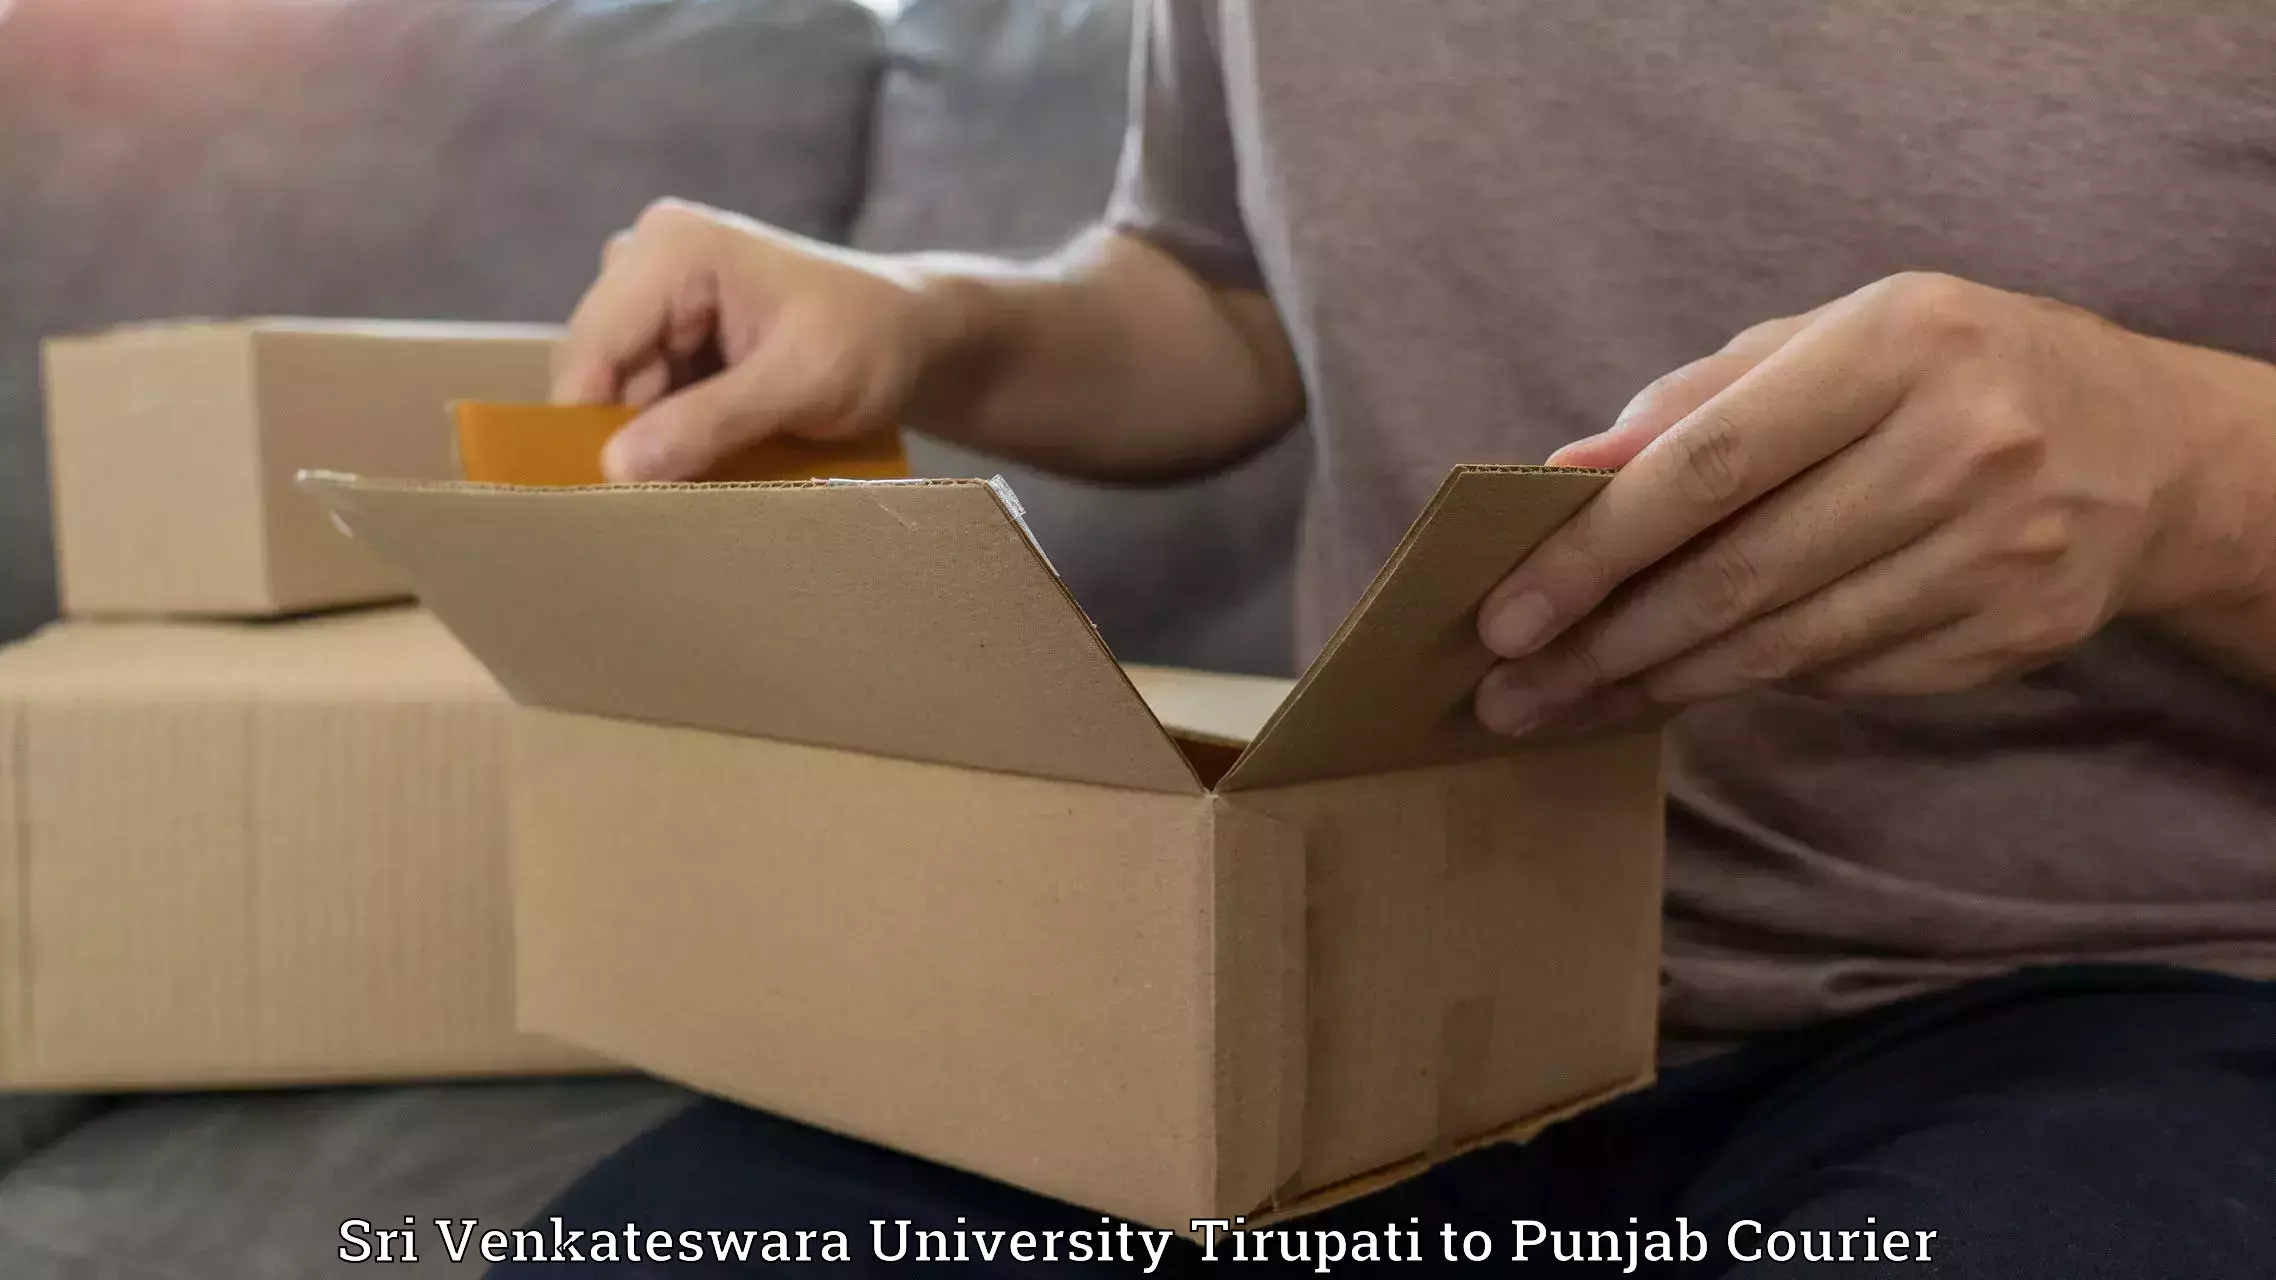 Seamless shipping experience in Sri Venkateswara University Tirupati to Punjab